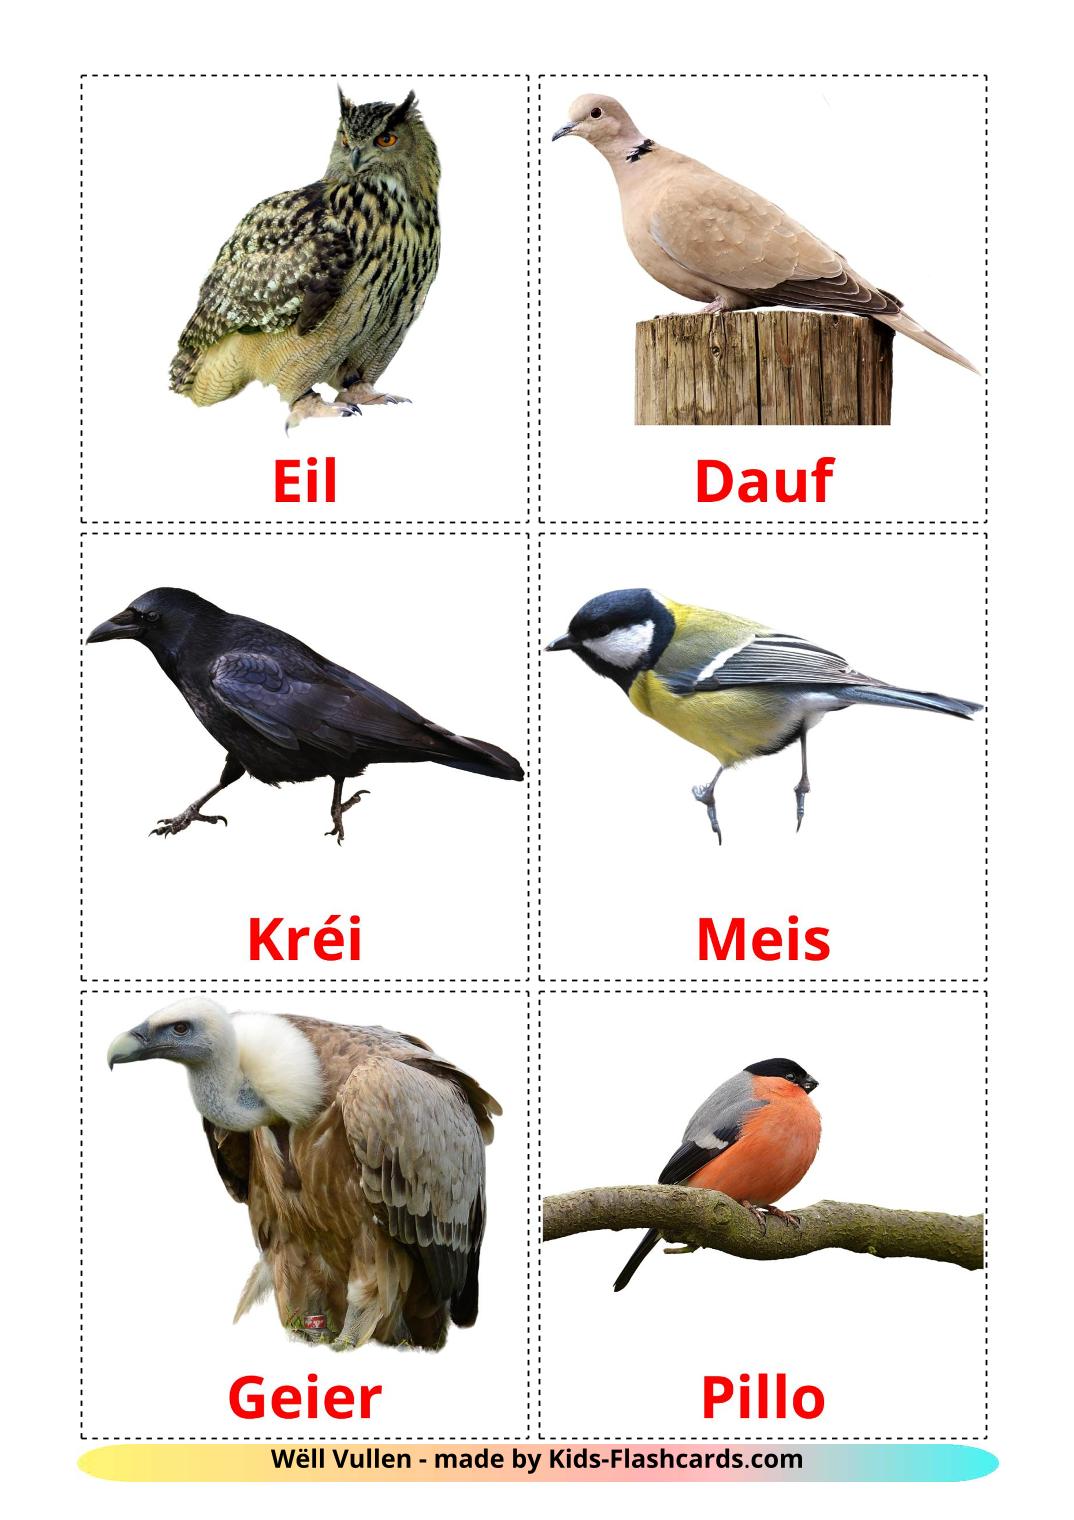 Pájaros salvajes - 18 fichas de luxemburgués para imprimir gratis 